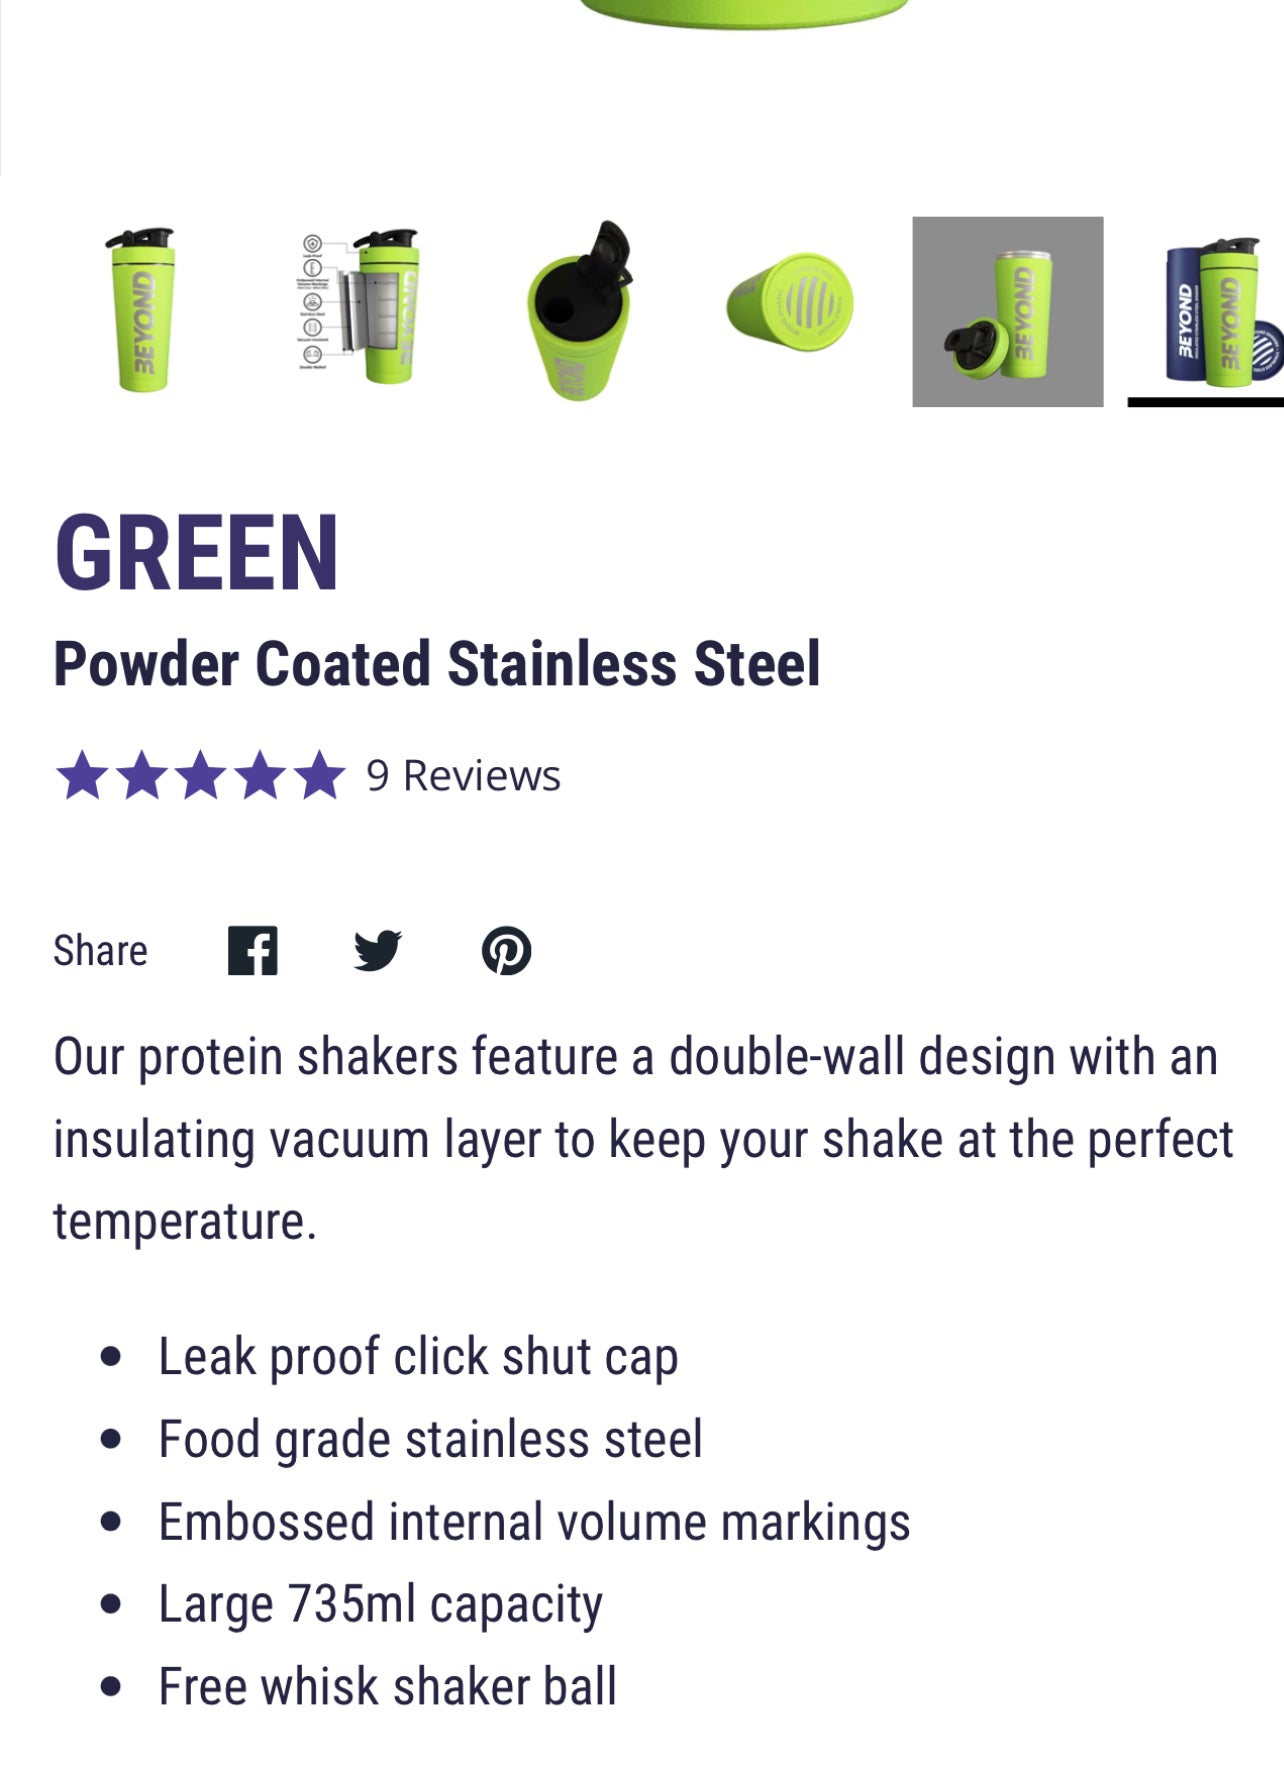 CORSA GREEN HARD STEEL SHAKER